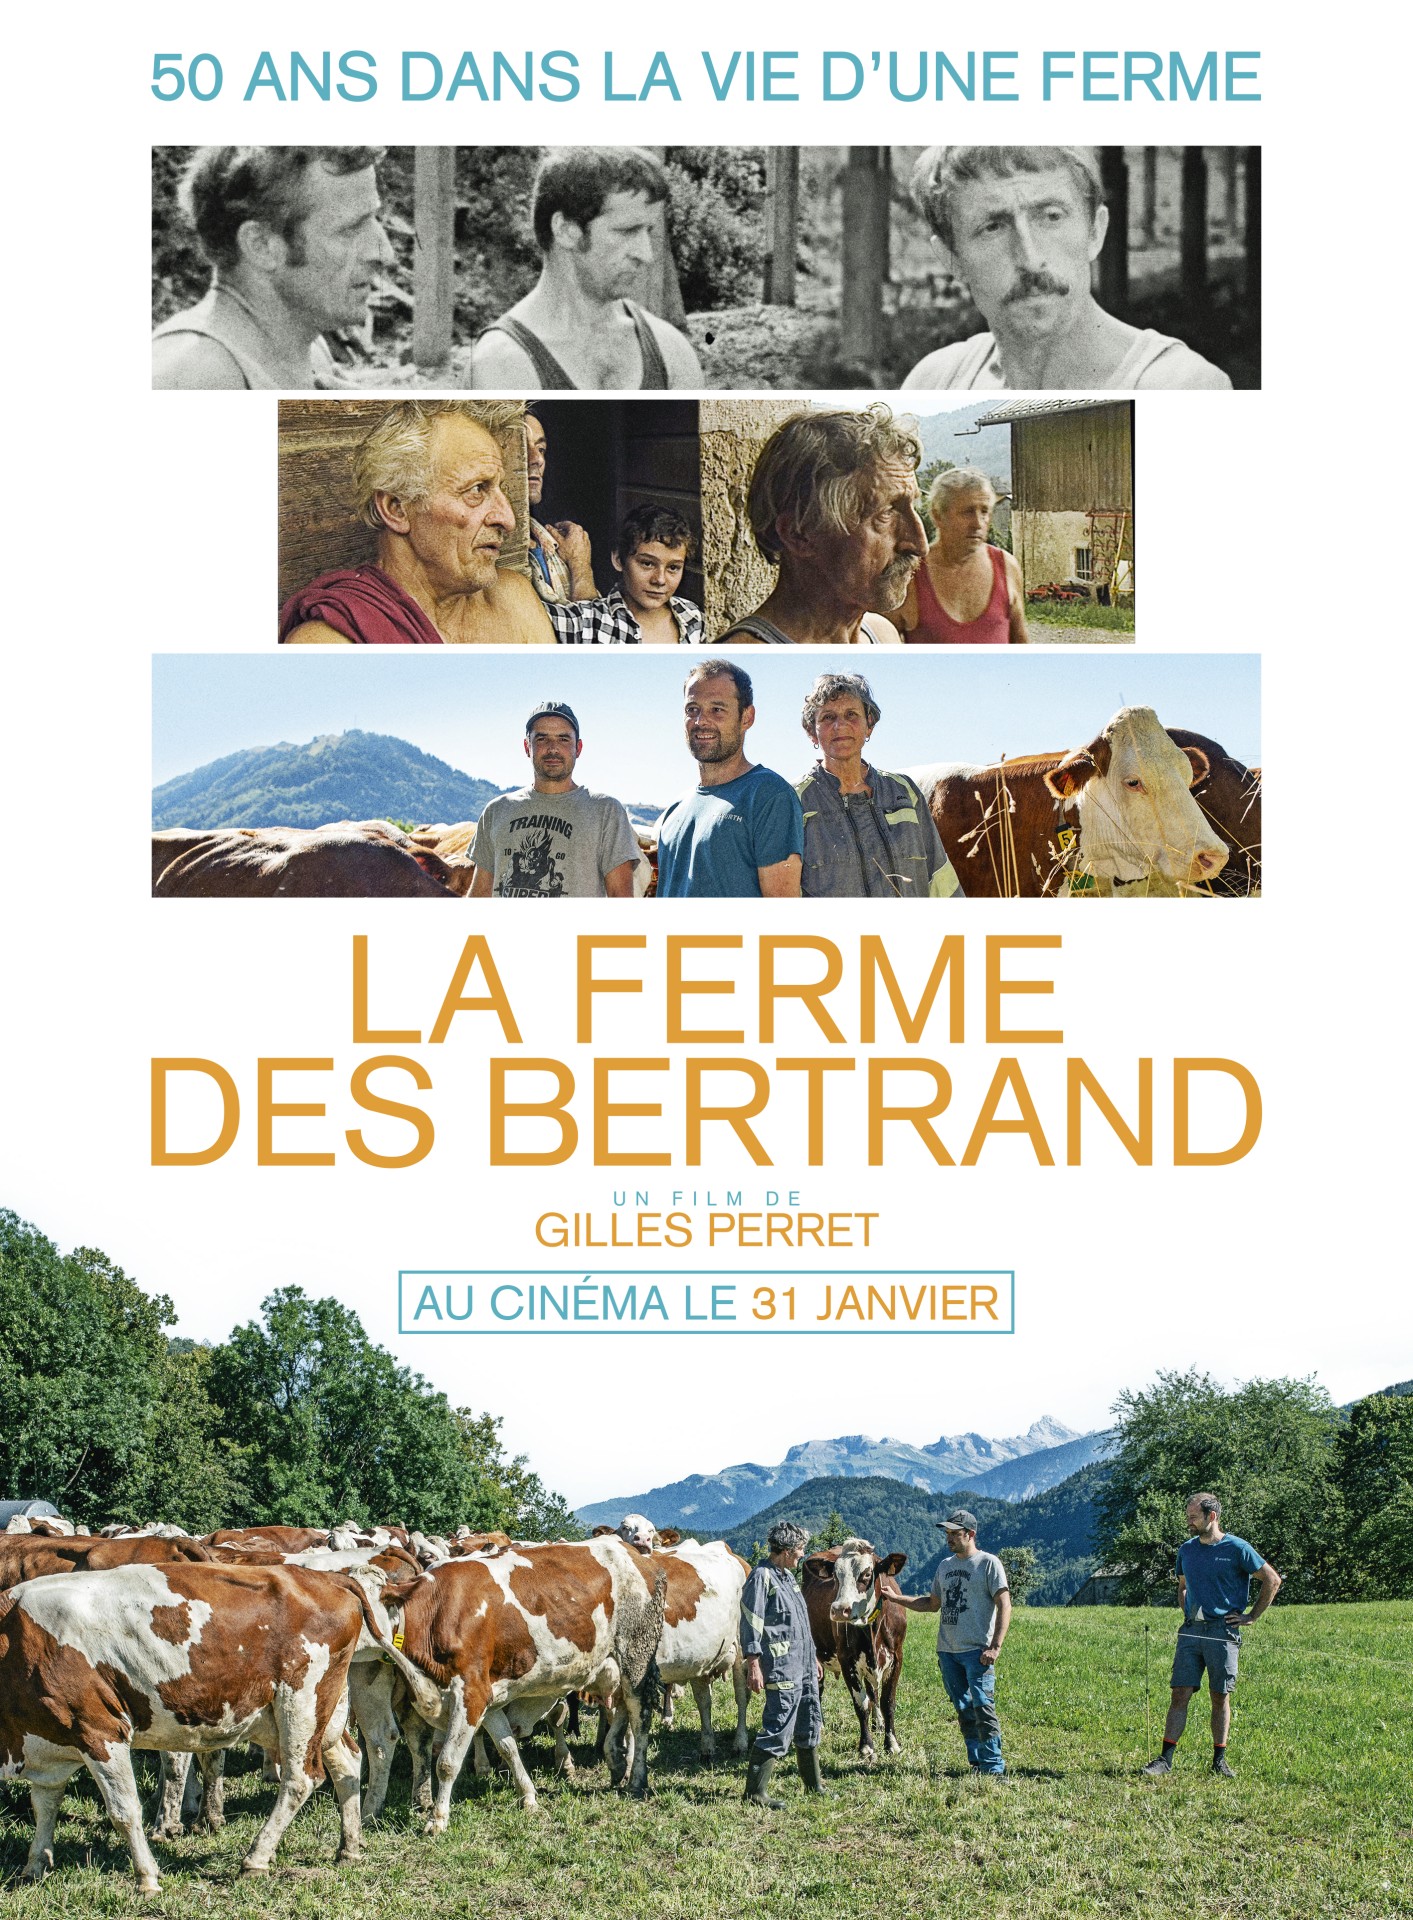 La ferme des Bertrand : 50 ans d’histoire dans la vie d’une ferme